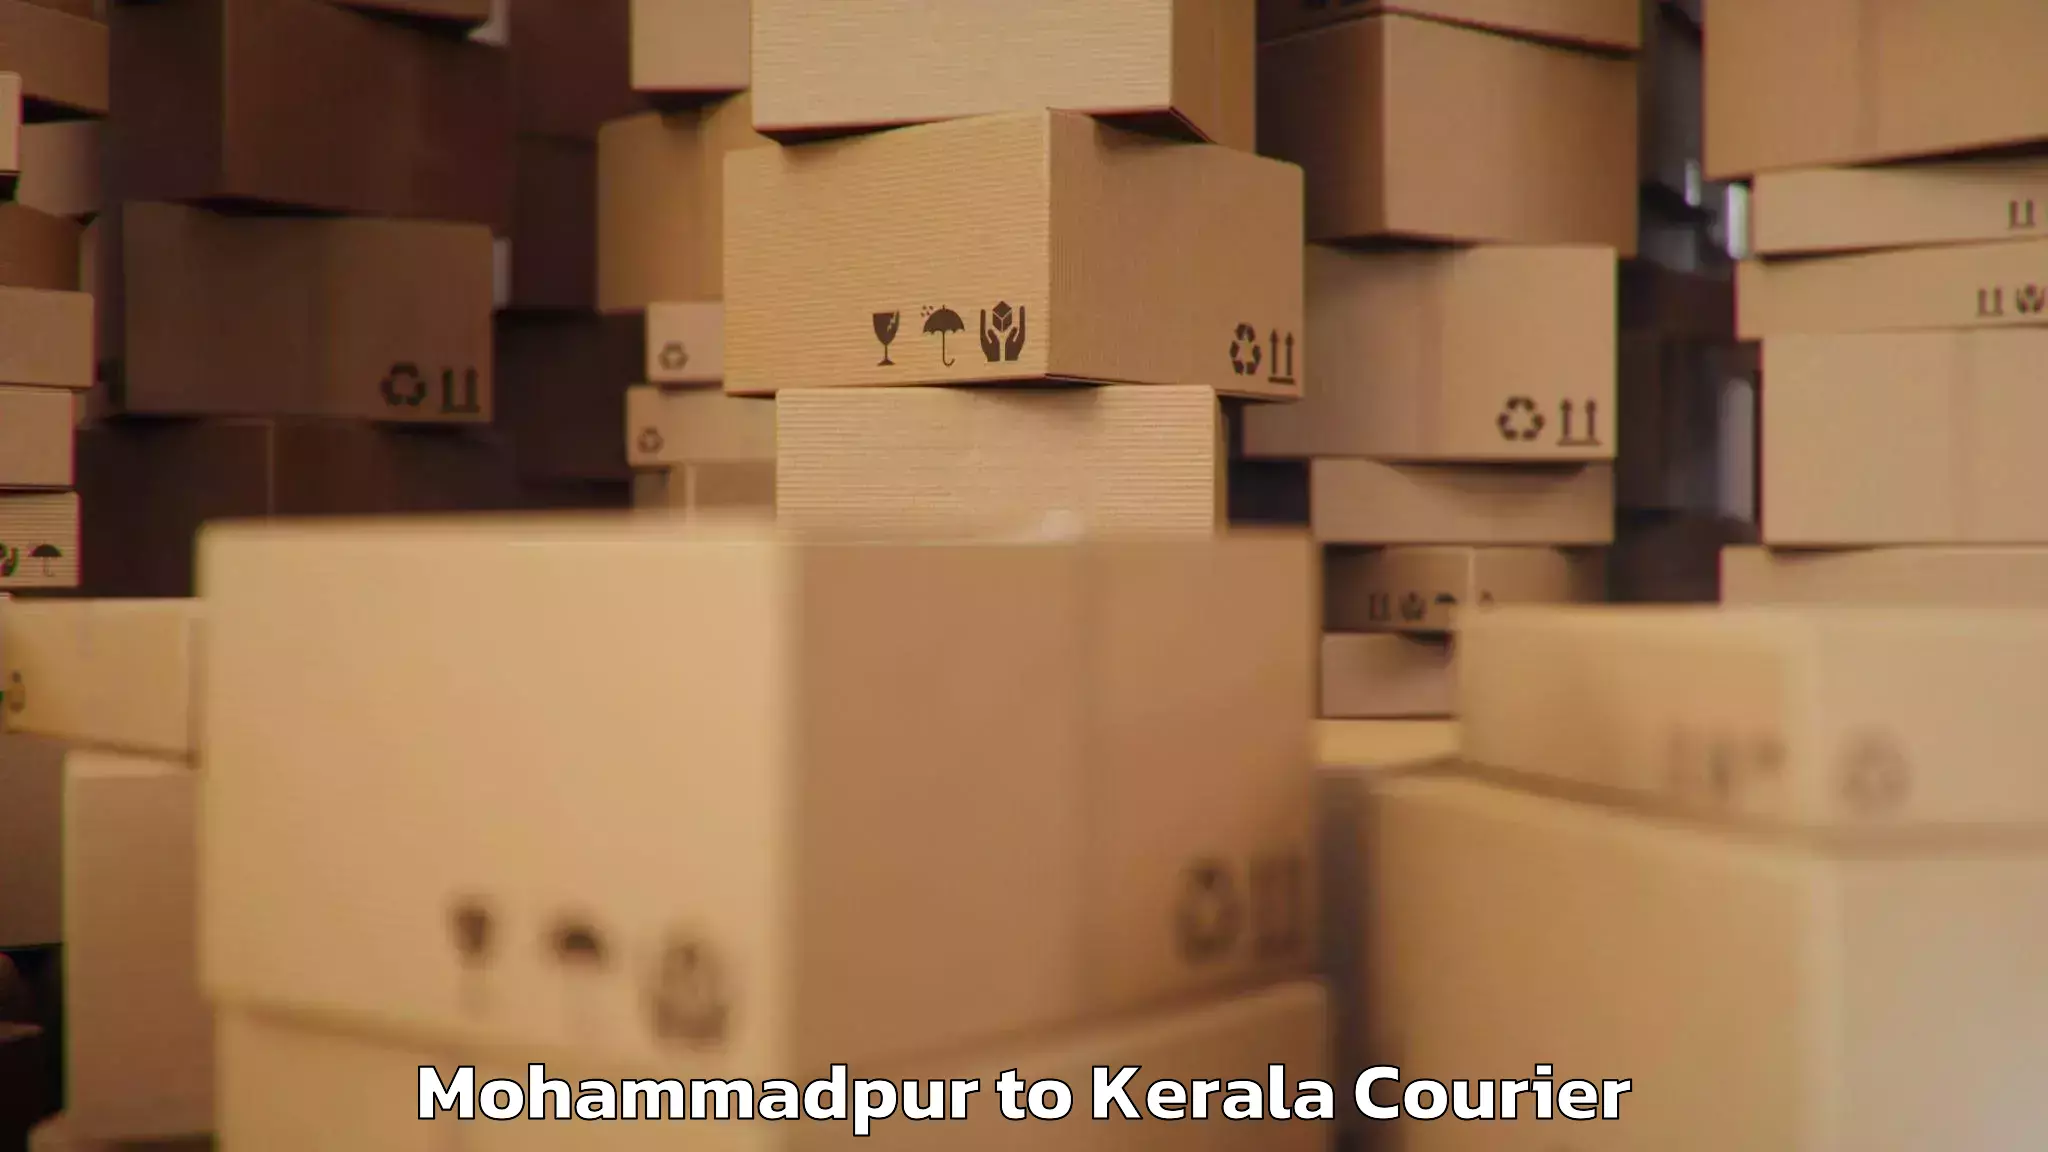 Baggage transport estimate Mohammadpur to Kerala